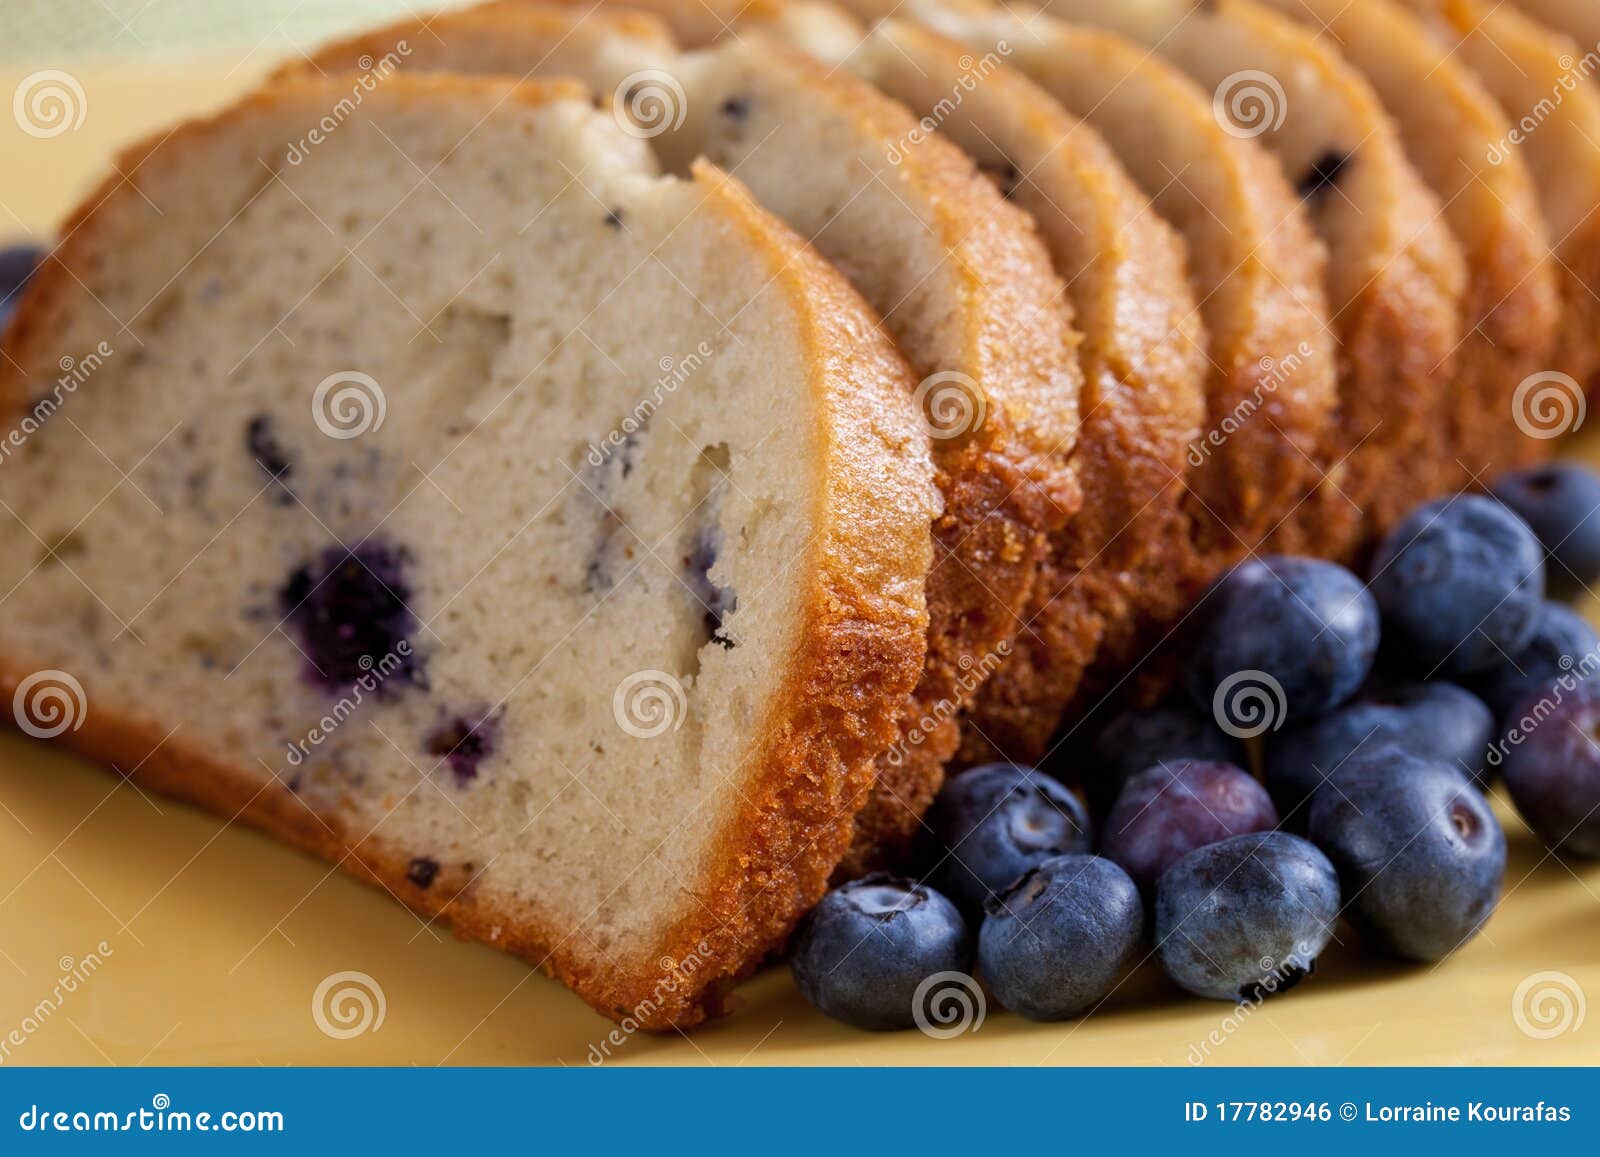 简单生活，随心所欲，快乐充实: 蓝莓芝士面包